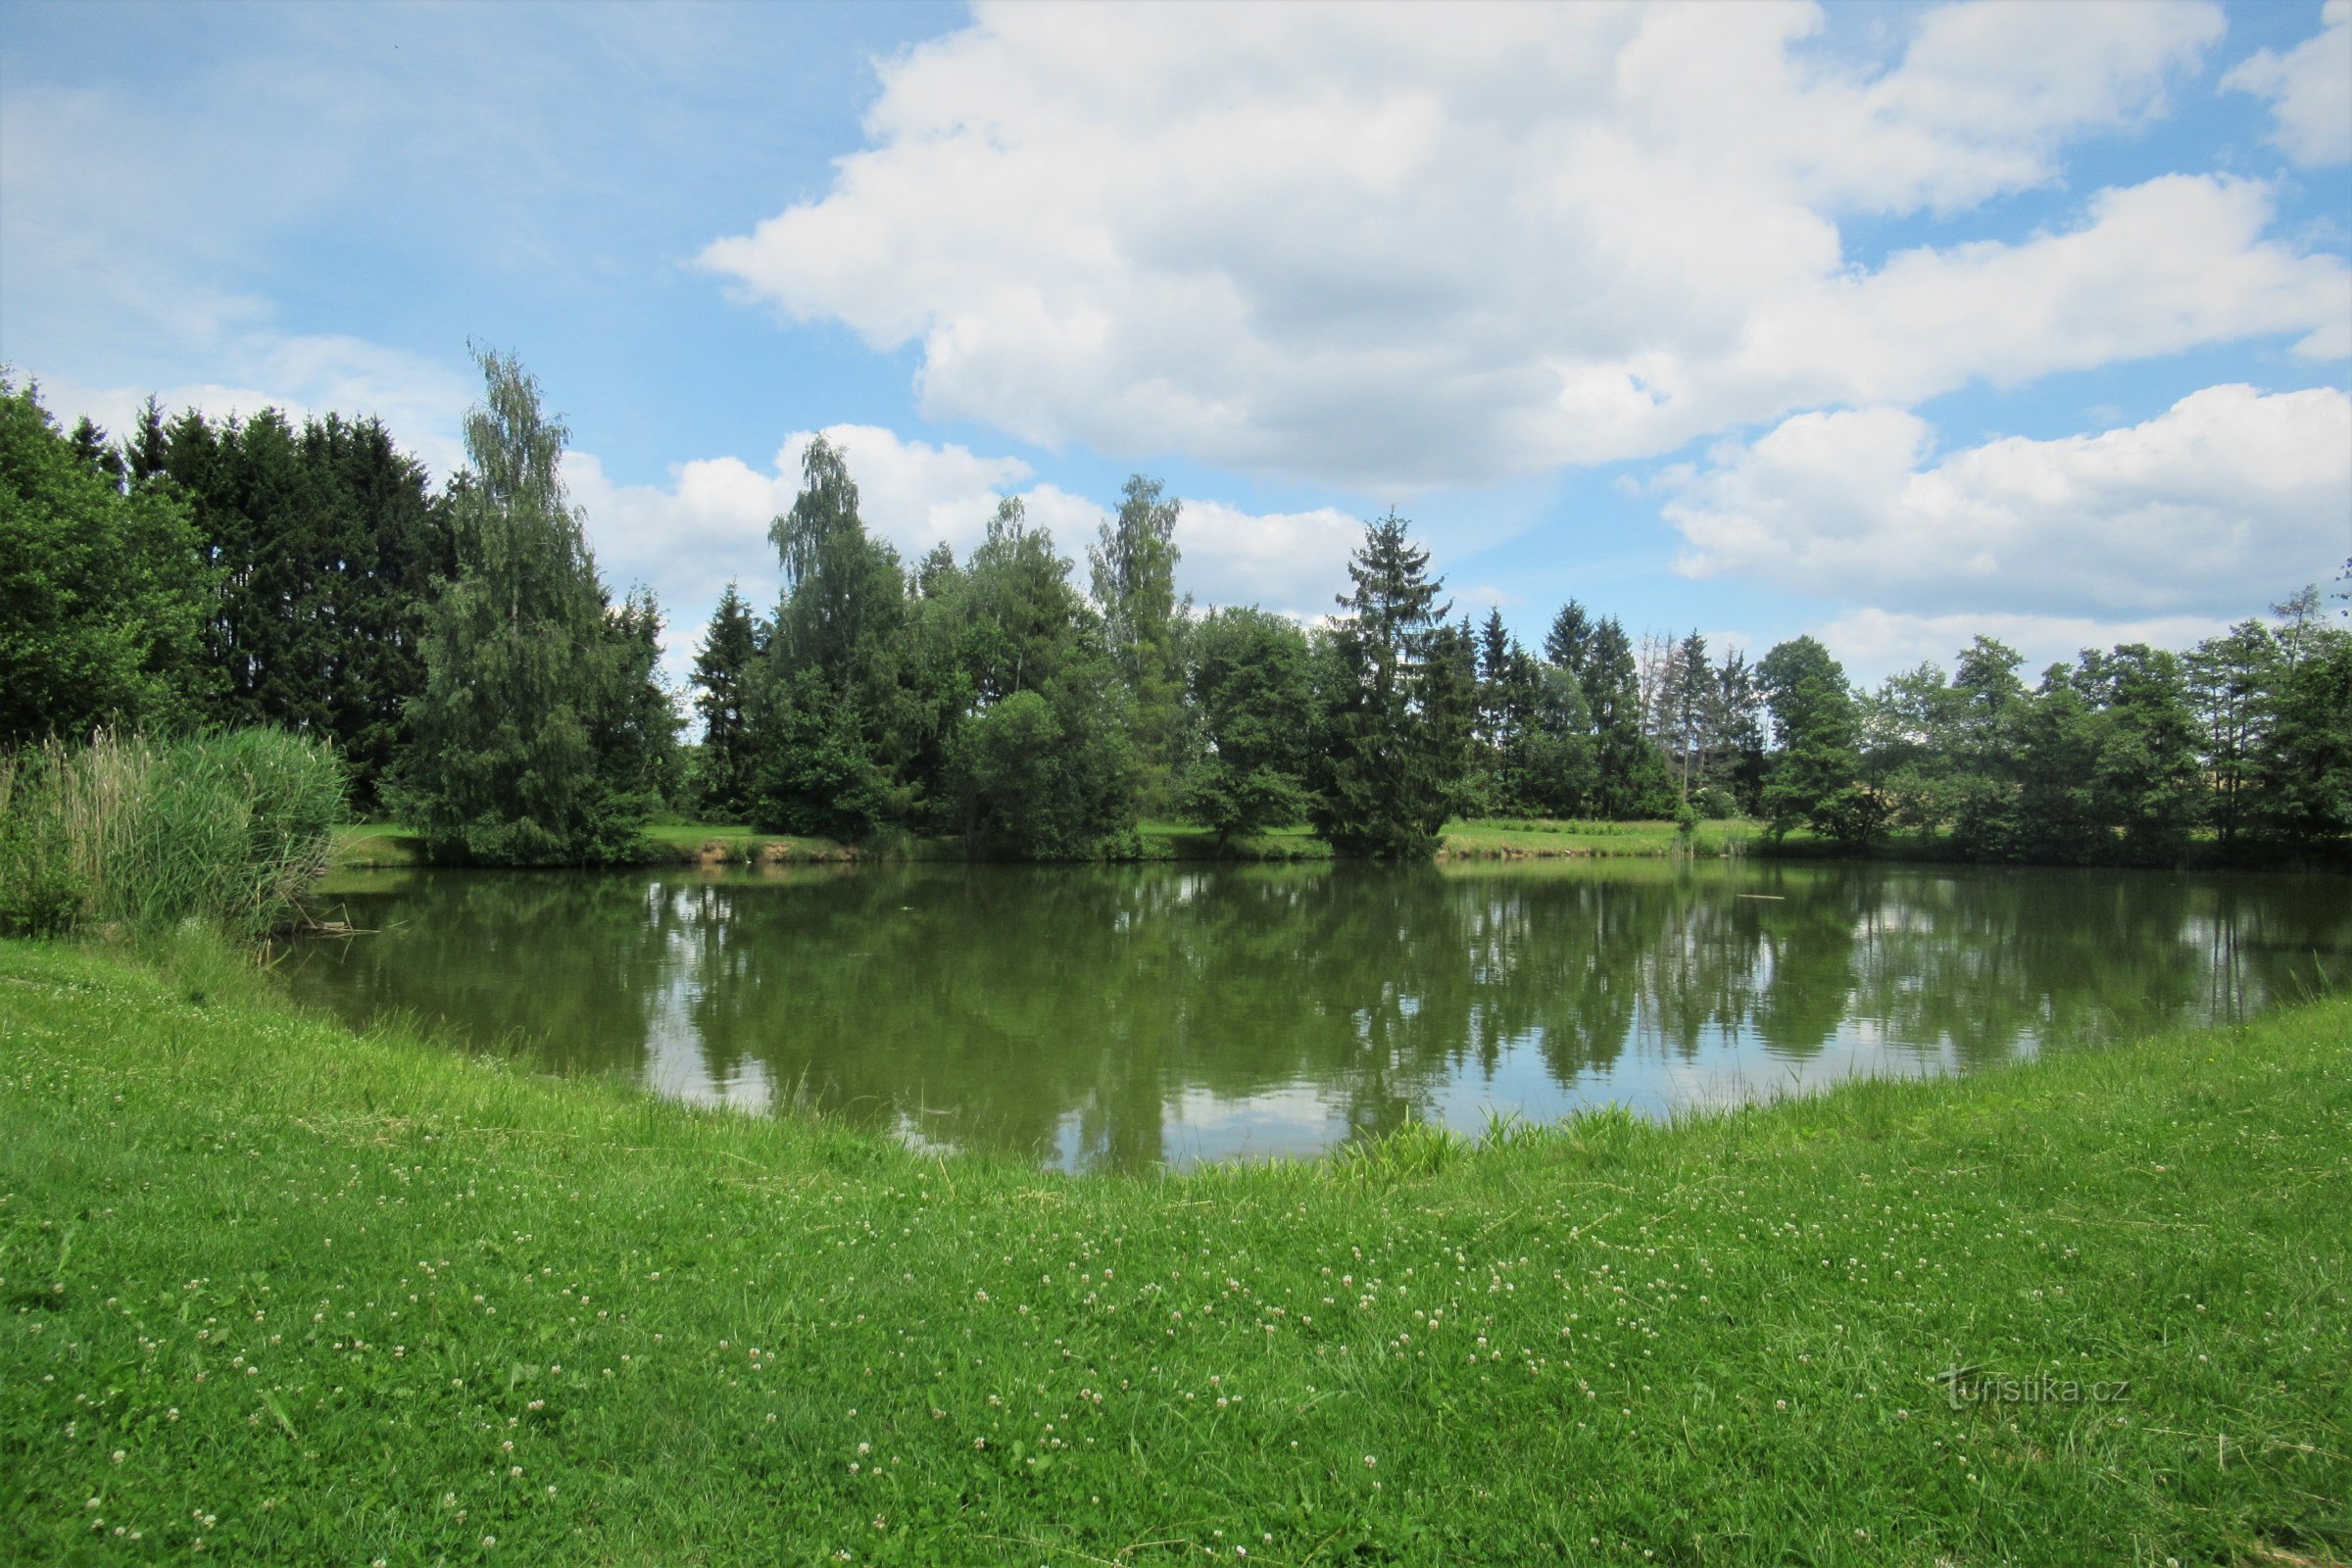 Pond with park arrangement